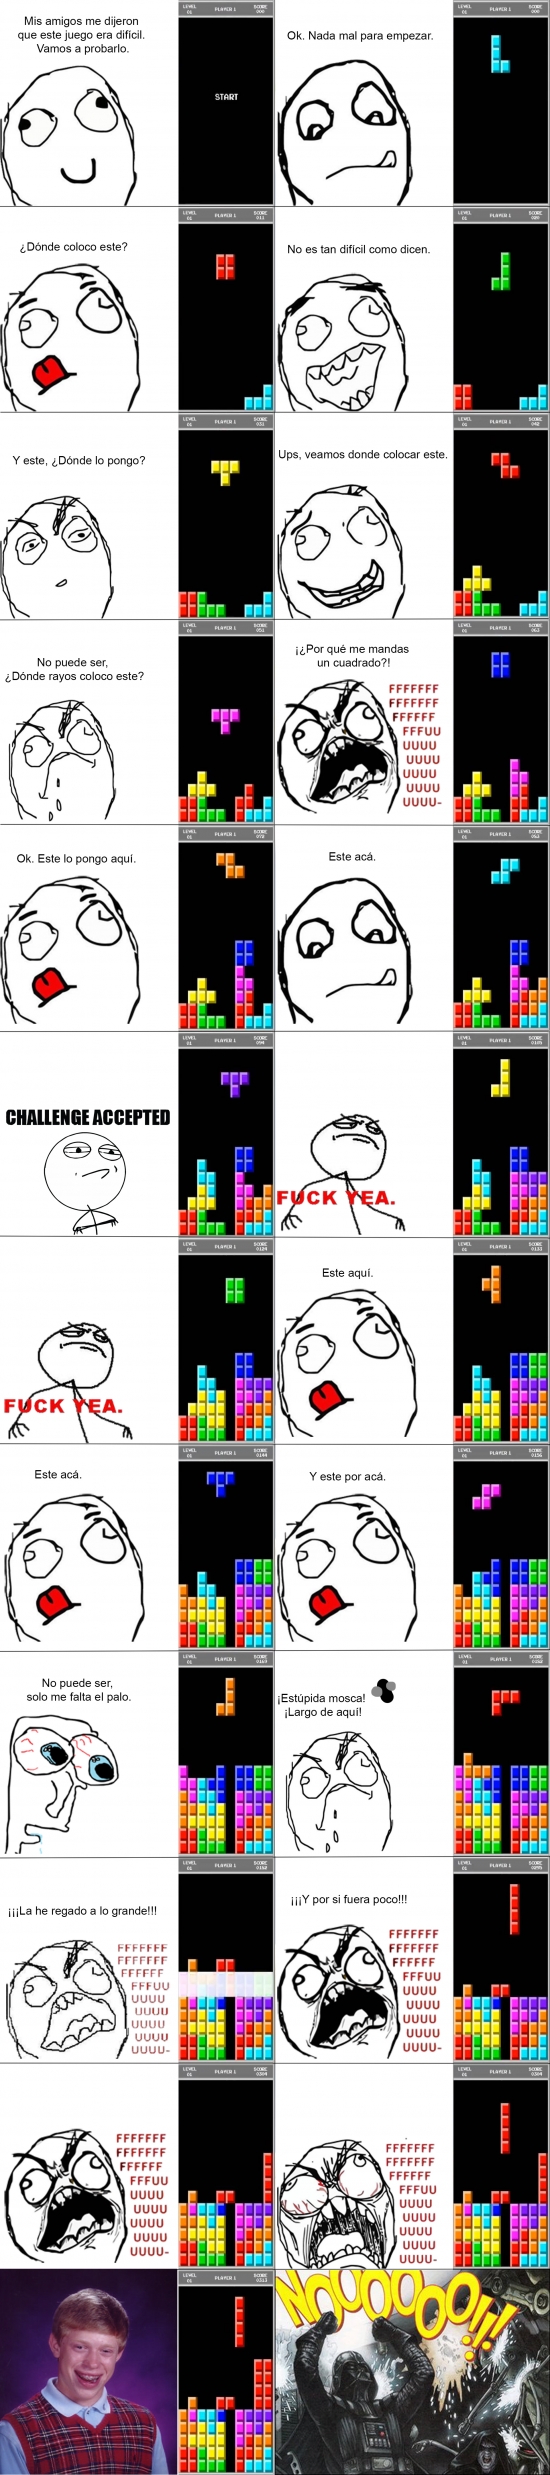 Ffffuuuuuuuuuu - La ''suerte'' de algunos en el Tetris